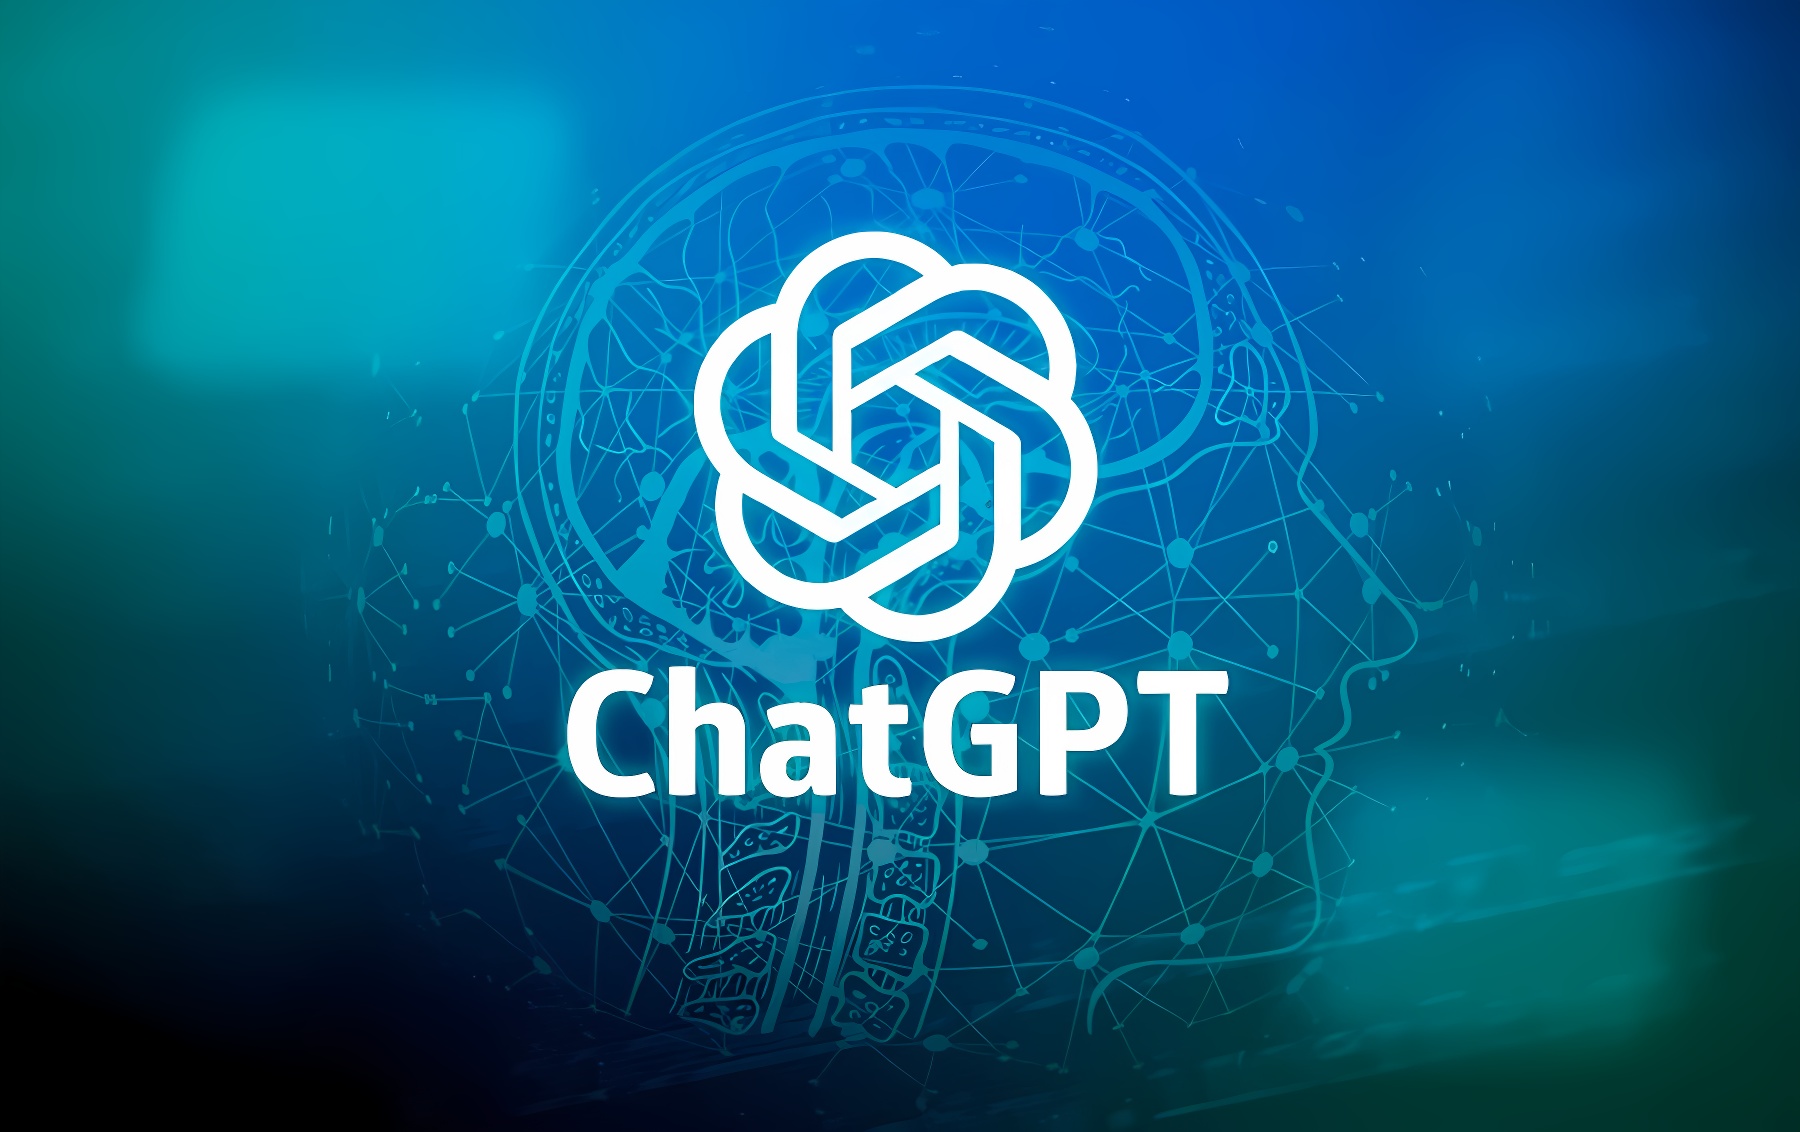 这是一张图片，展示了ChatGPT的标志，背景是蓝色调，图中有数字元素和线条构成的图案。